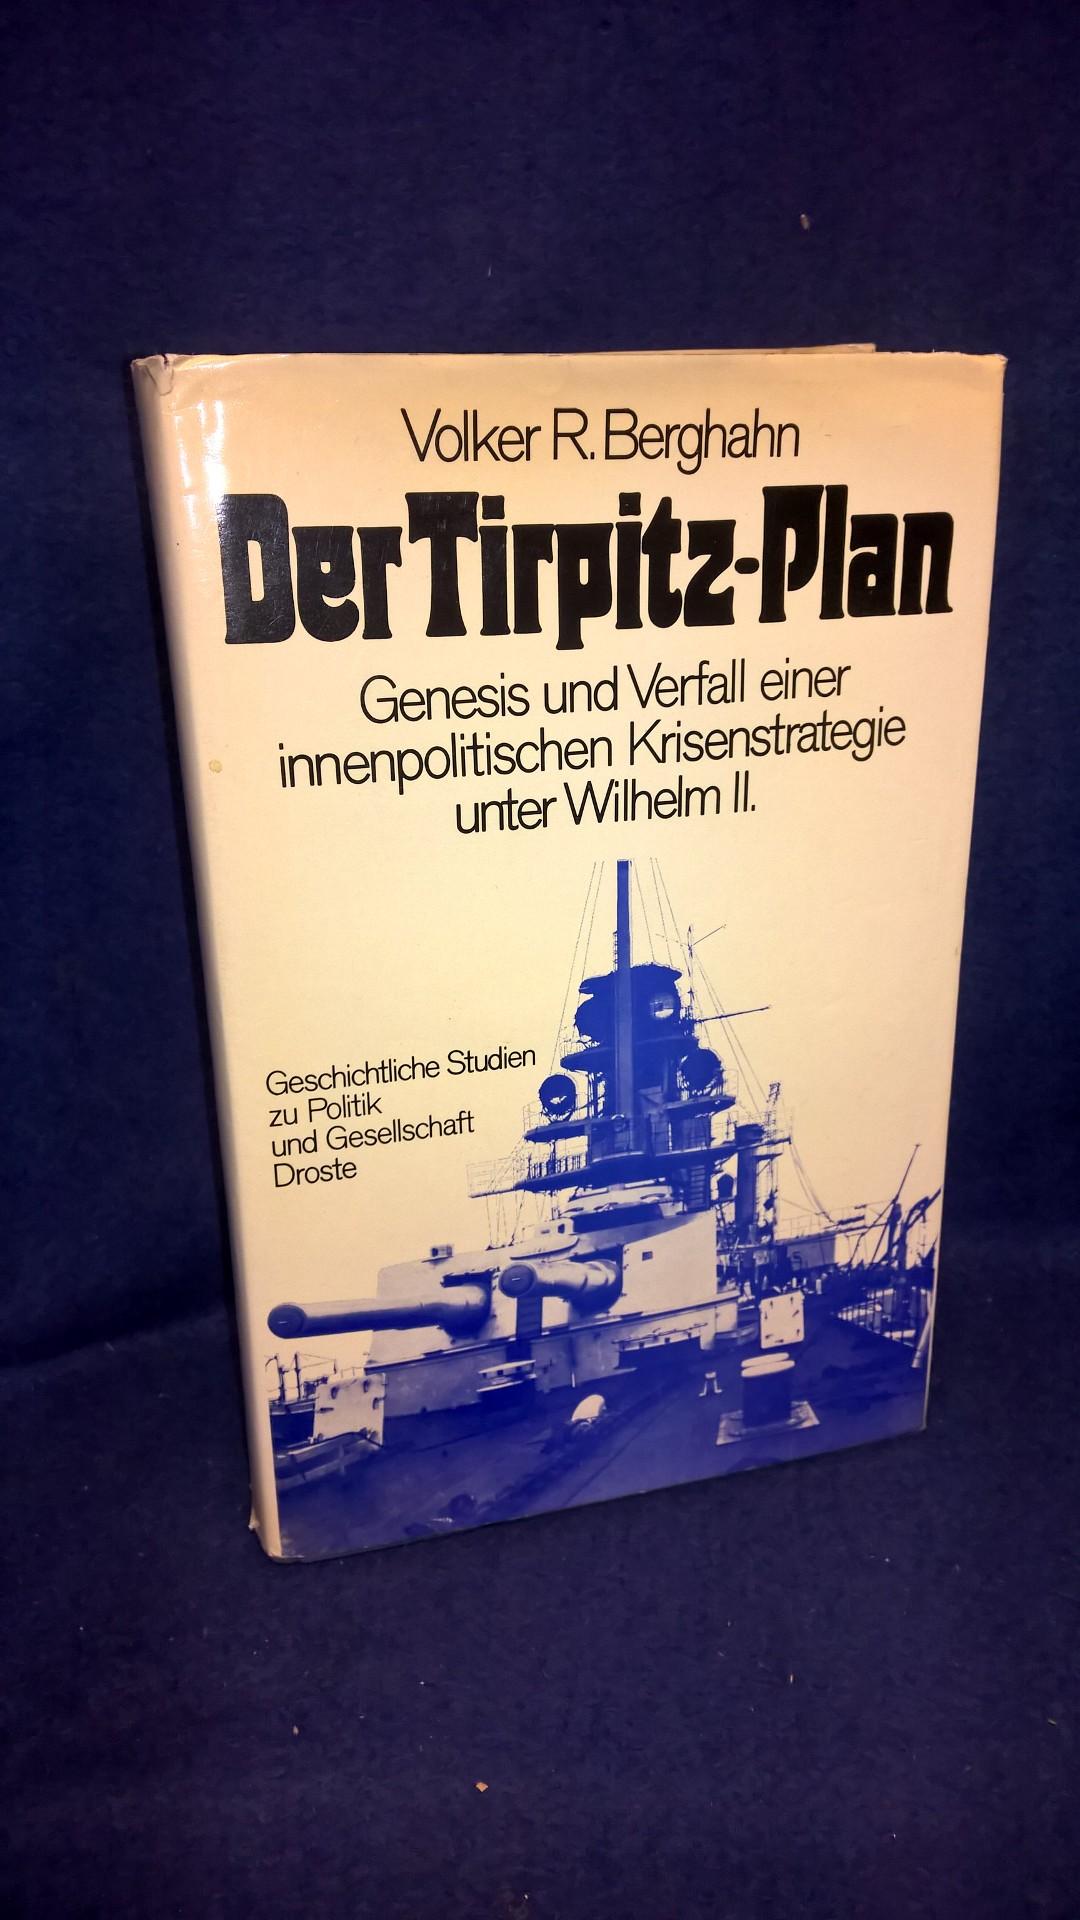 Der Tirpitz-Plan. Genesis und Verfall einer innenpolitischen Krisenstrategie unter Wilhelm II. Geschichtliche Studien zu Politik und Gesellschaft 